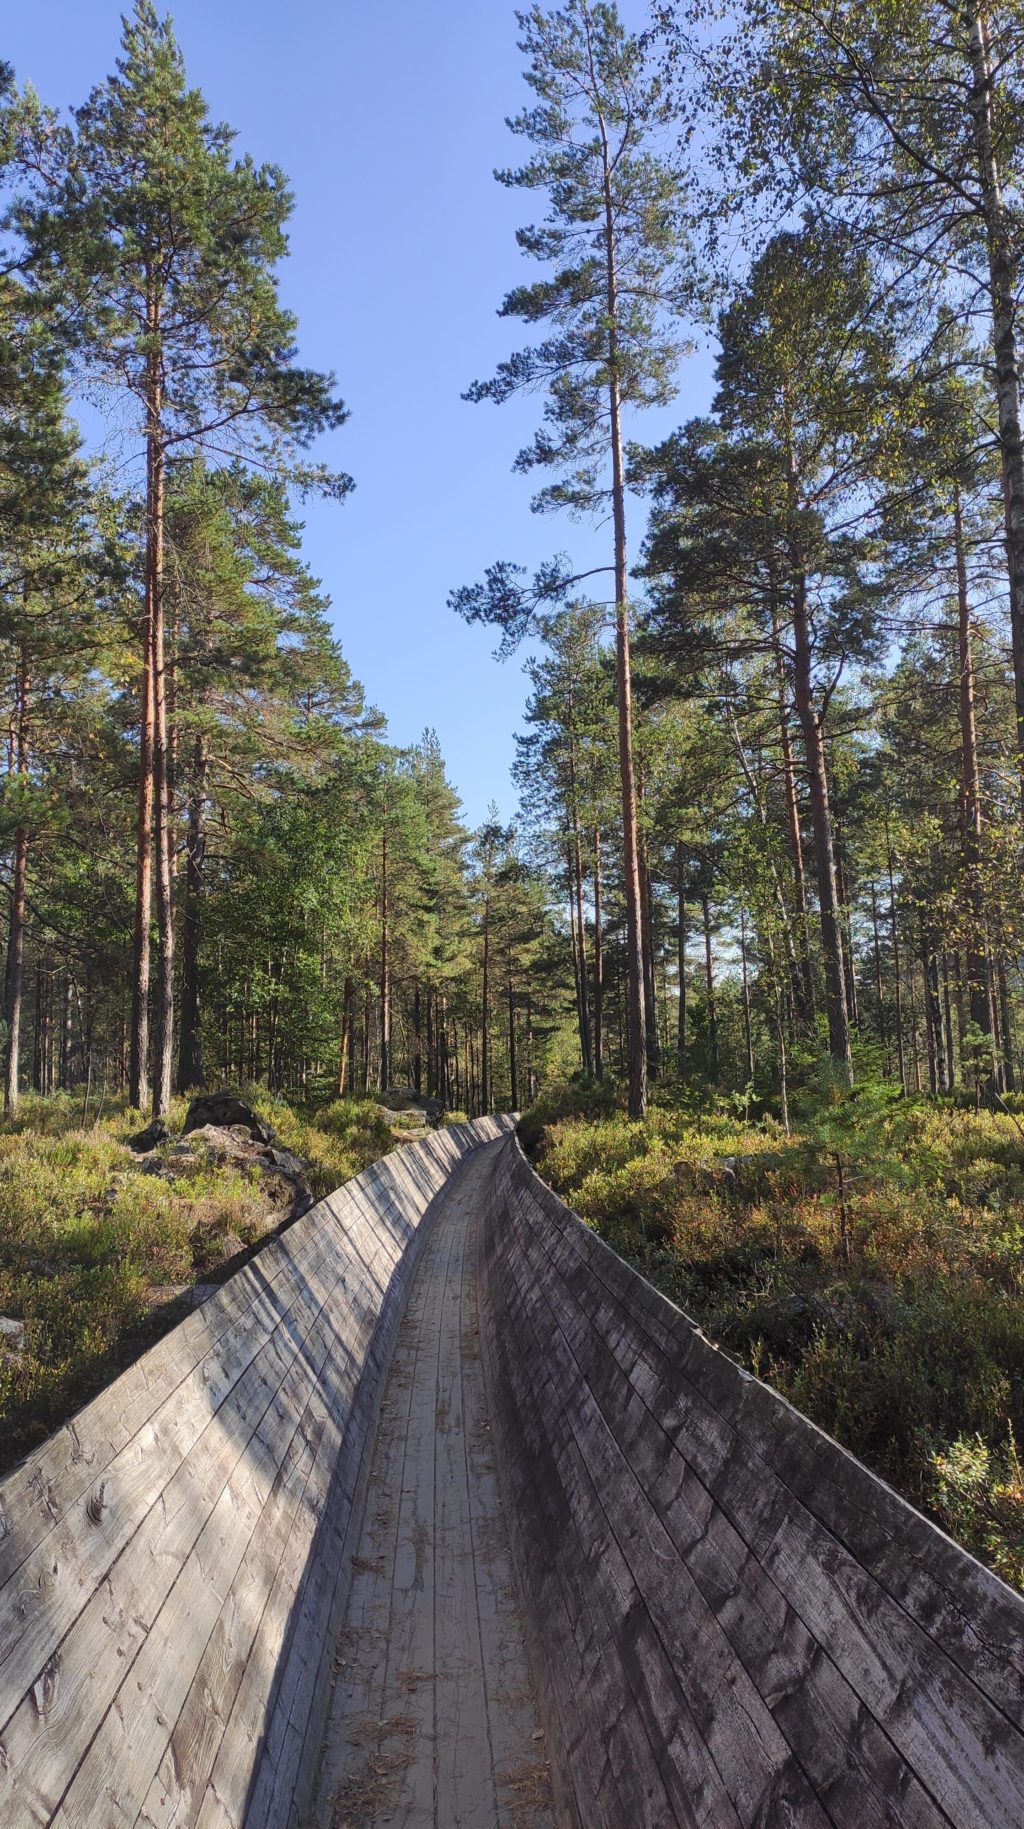 In der Flößerrinne Tømmerrenna bei Kristiansand in Norwegen wurde früher Holz aus dem Wald zum Fluss gebracht